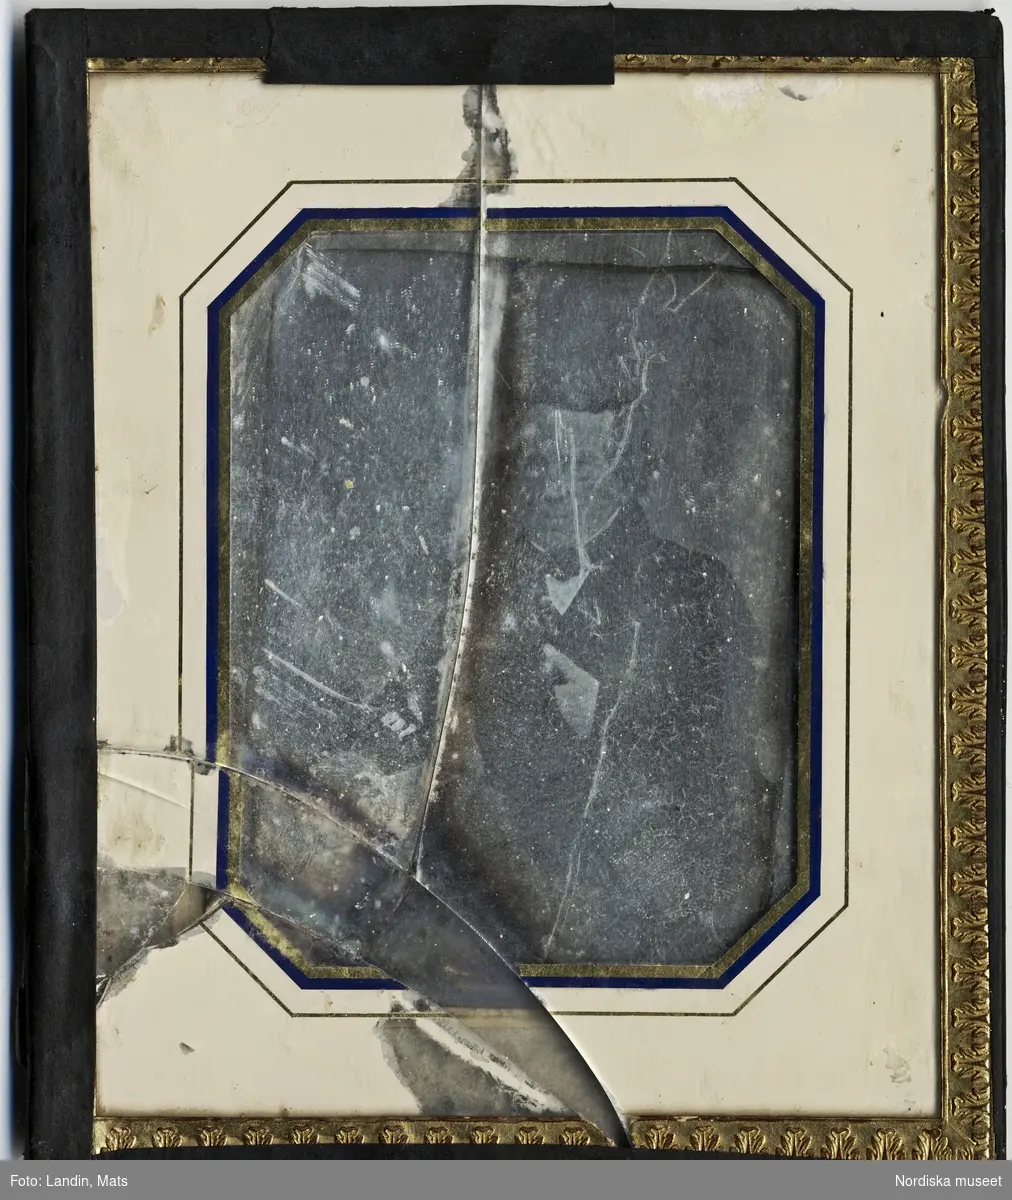 Dagerrotyp / daguerreotyp utförd av J W Bergström, porträtt av biskop K E Fahlcrantz, ca. 1844-1850. Nordiska museet inv.nr 178588.
-
Quarter-plate daguerreotype portrait of bishop K. E. Fahlcrantz. Daguerreotype by J. W. Bergström, c. 1844-1850.